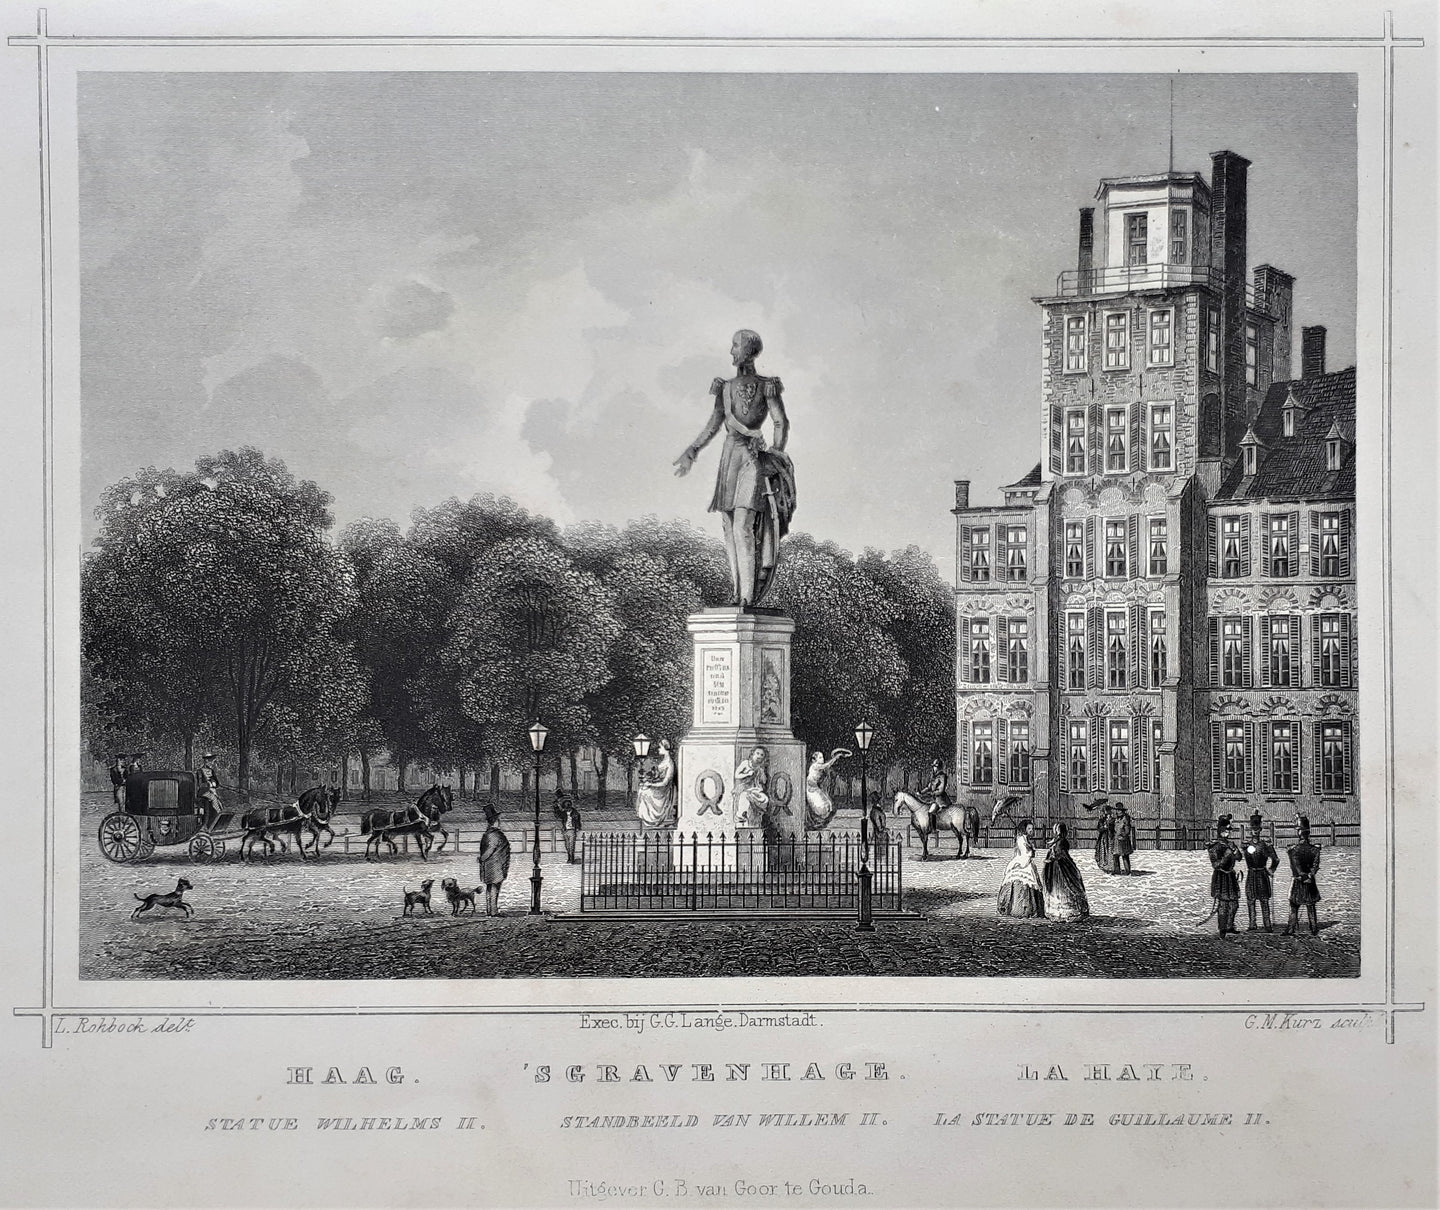 DEN HAAG Standbeeld koning Willem II te 's-Gravenhage - JL Terwen / GB van Goor - 1858